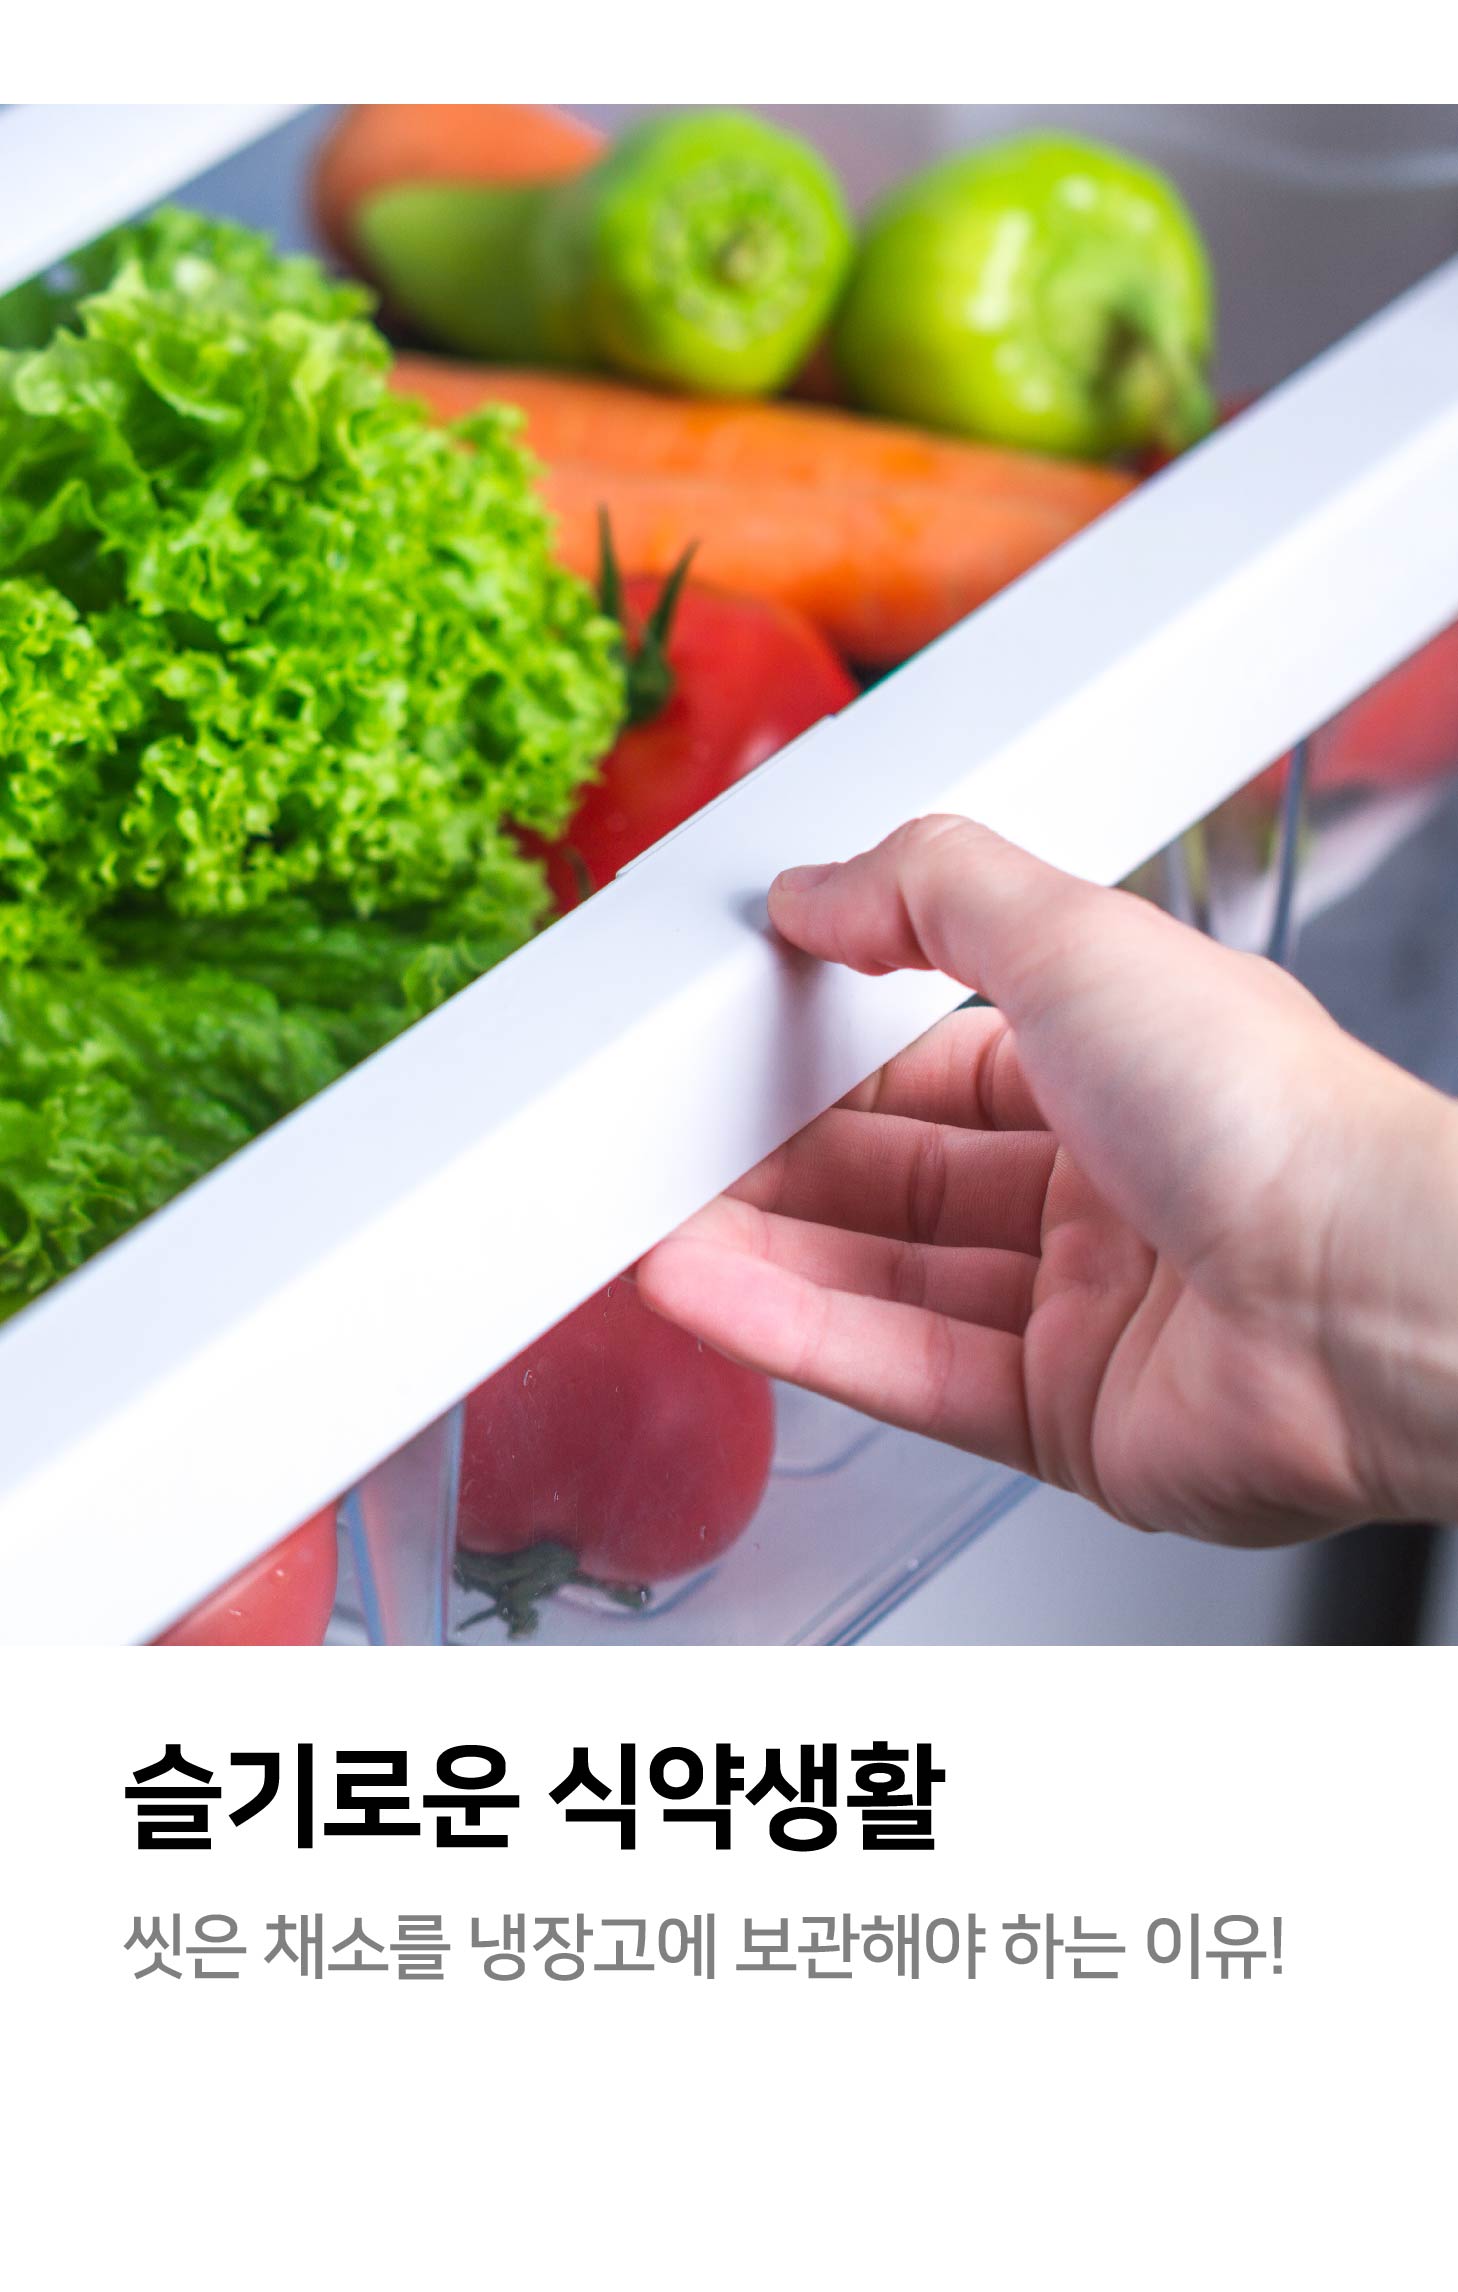 슬기로운 식약 생활 씻은 채소를 냉장고에 보관해야 하는 이유